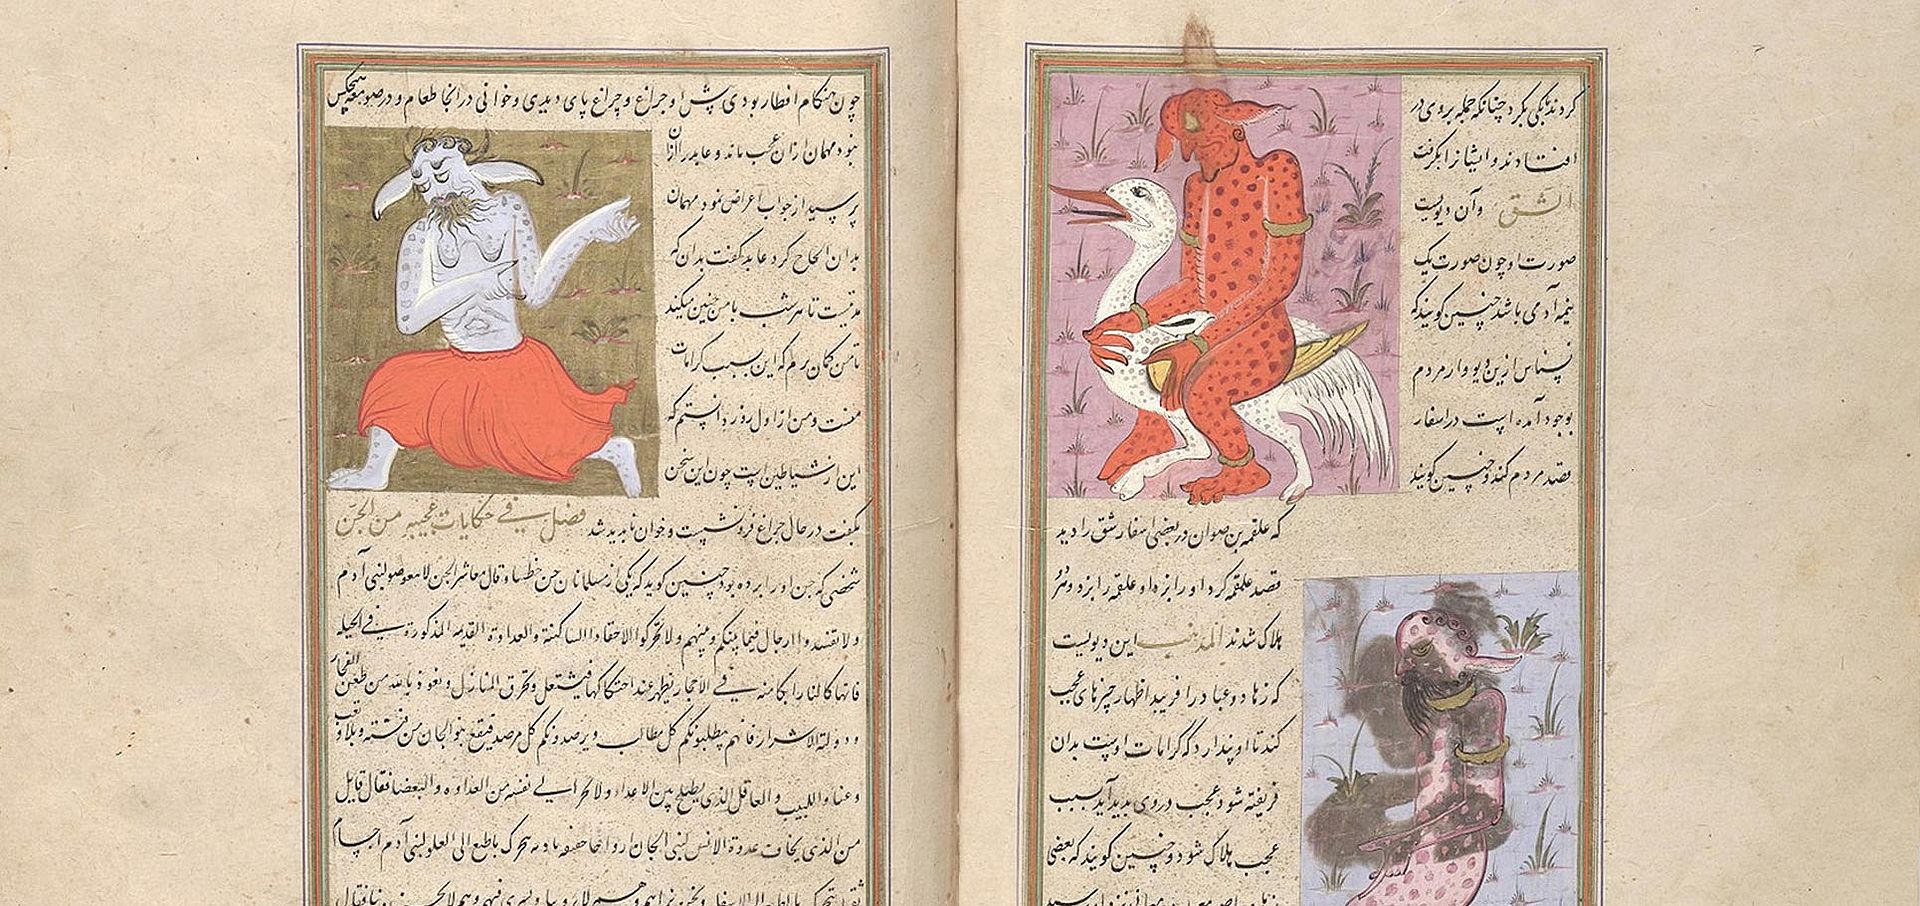 3 sogenannte Divs, Dämonen der persischen Mythologie